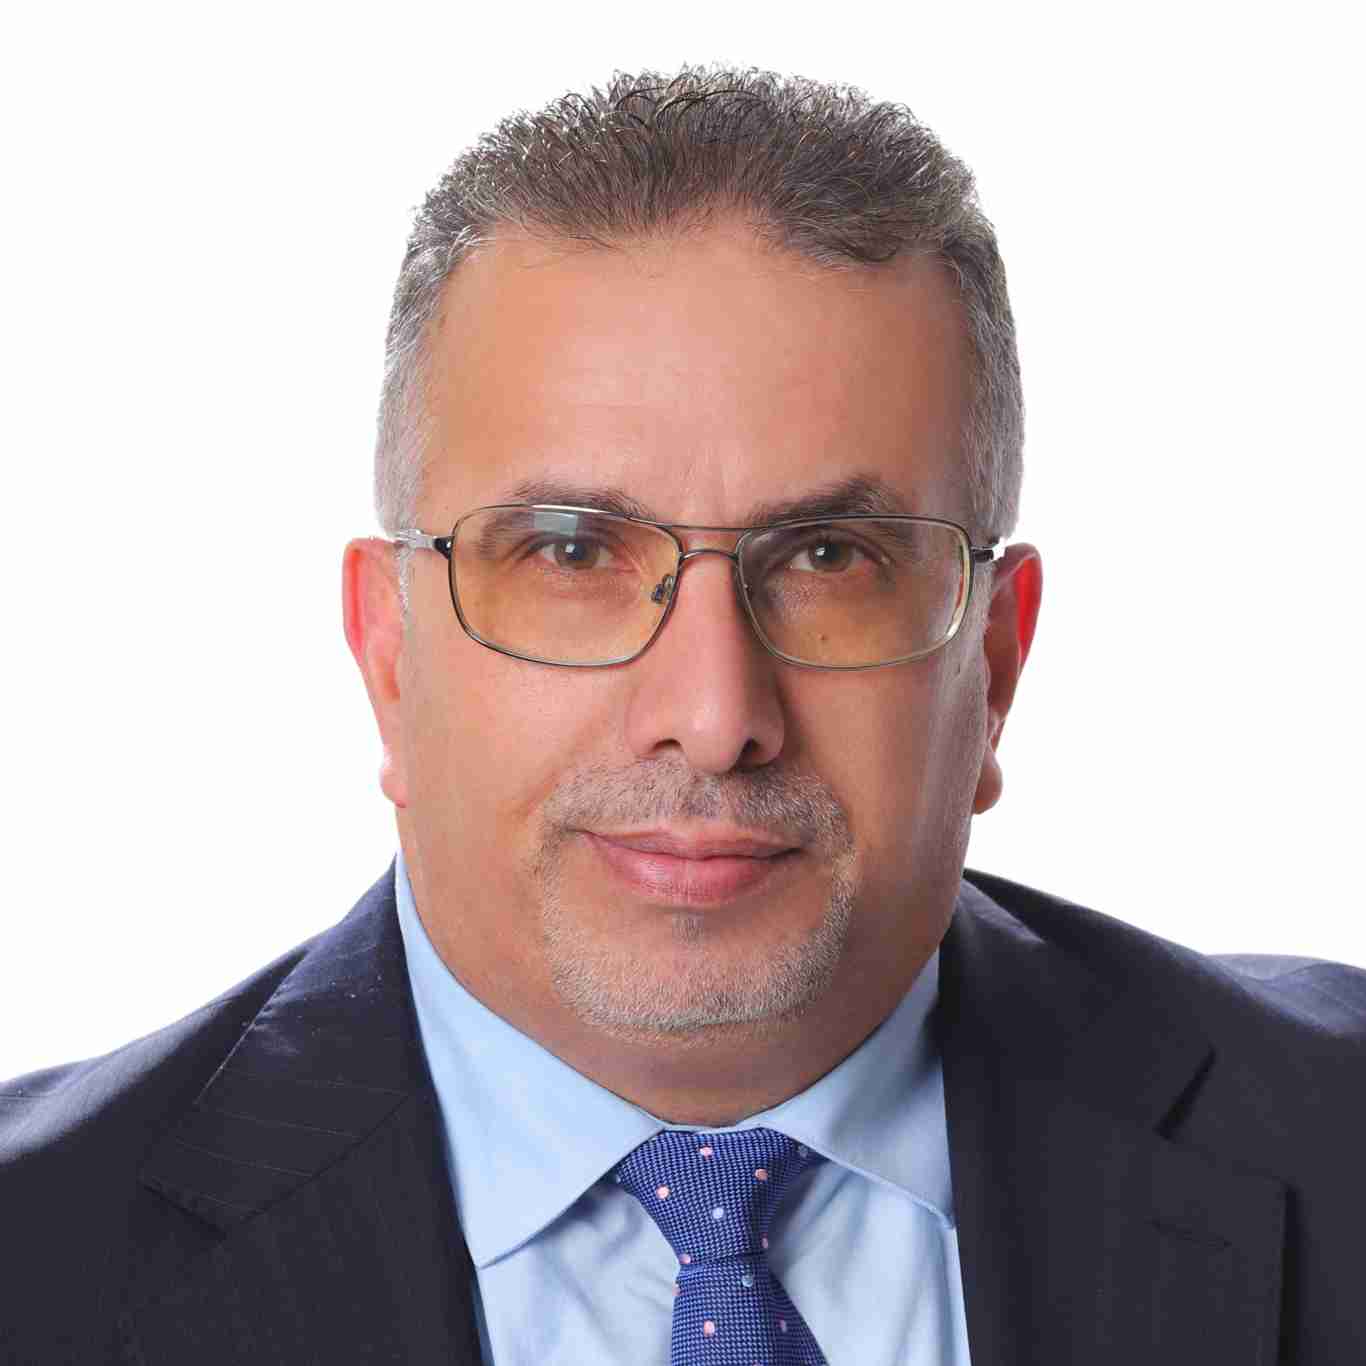 Mansour H. Almatarneh